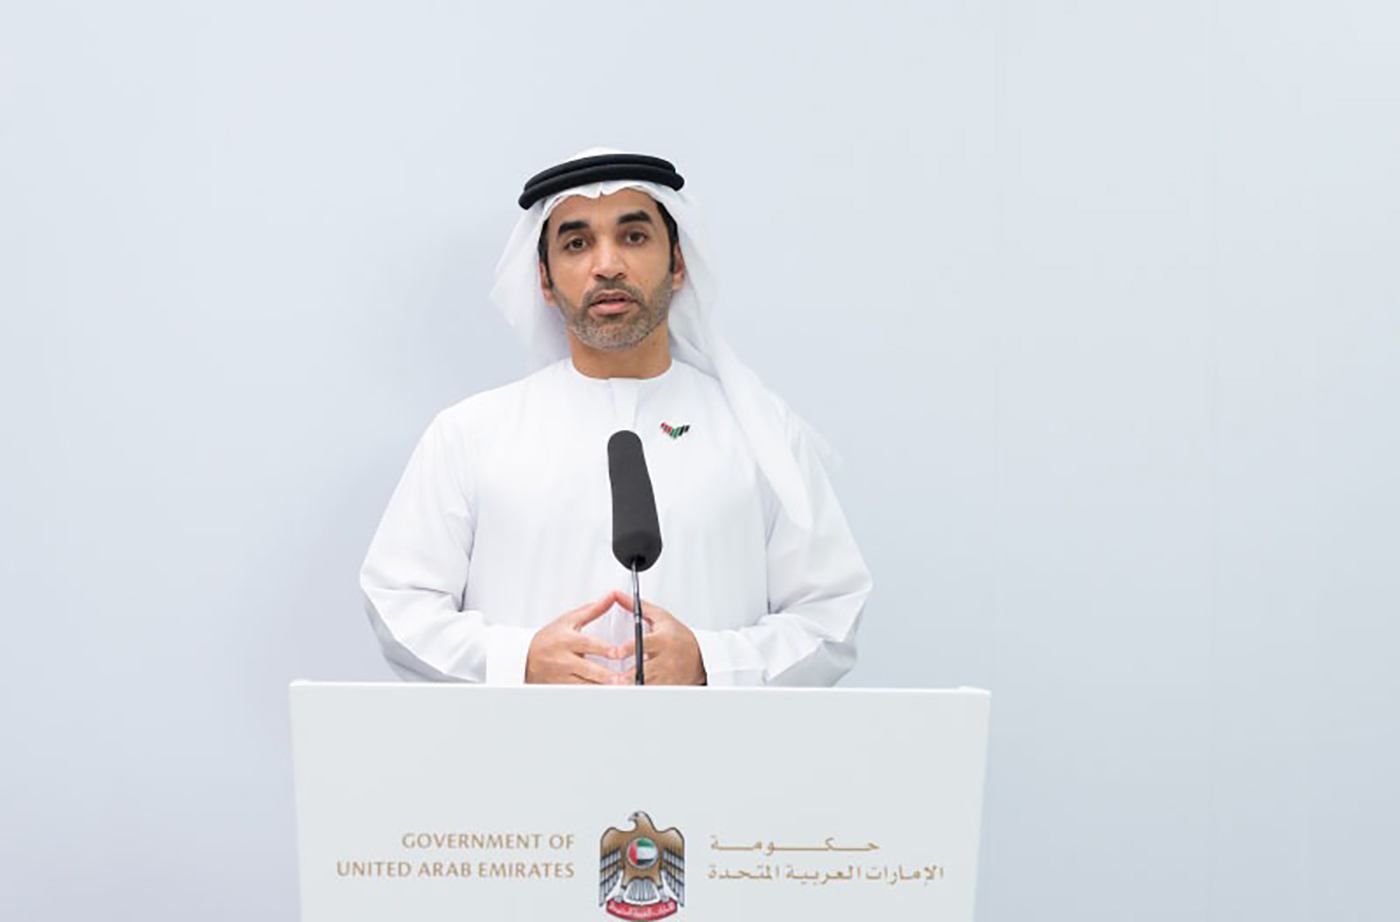 حكومة الإمارات : الإعلان عن استكمال وانتهاء برنامج التعقيم الوطني في مختلف أرجاء الدولة اعتباراً من اليوم 